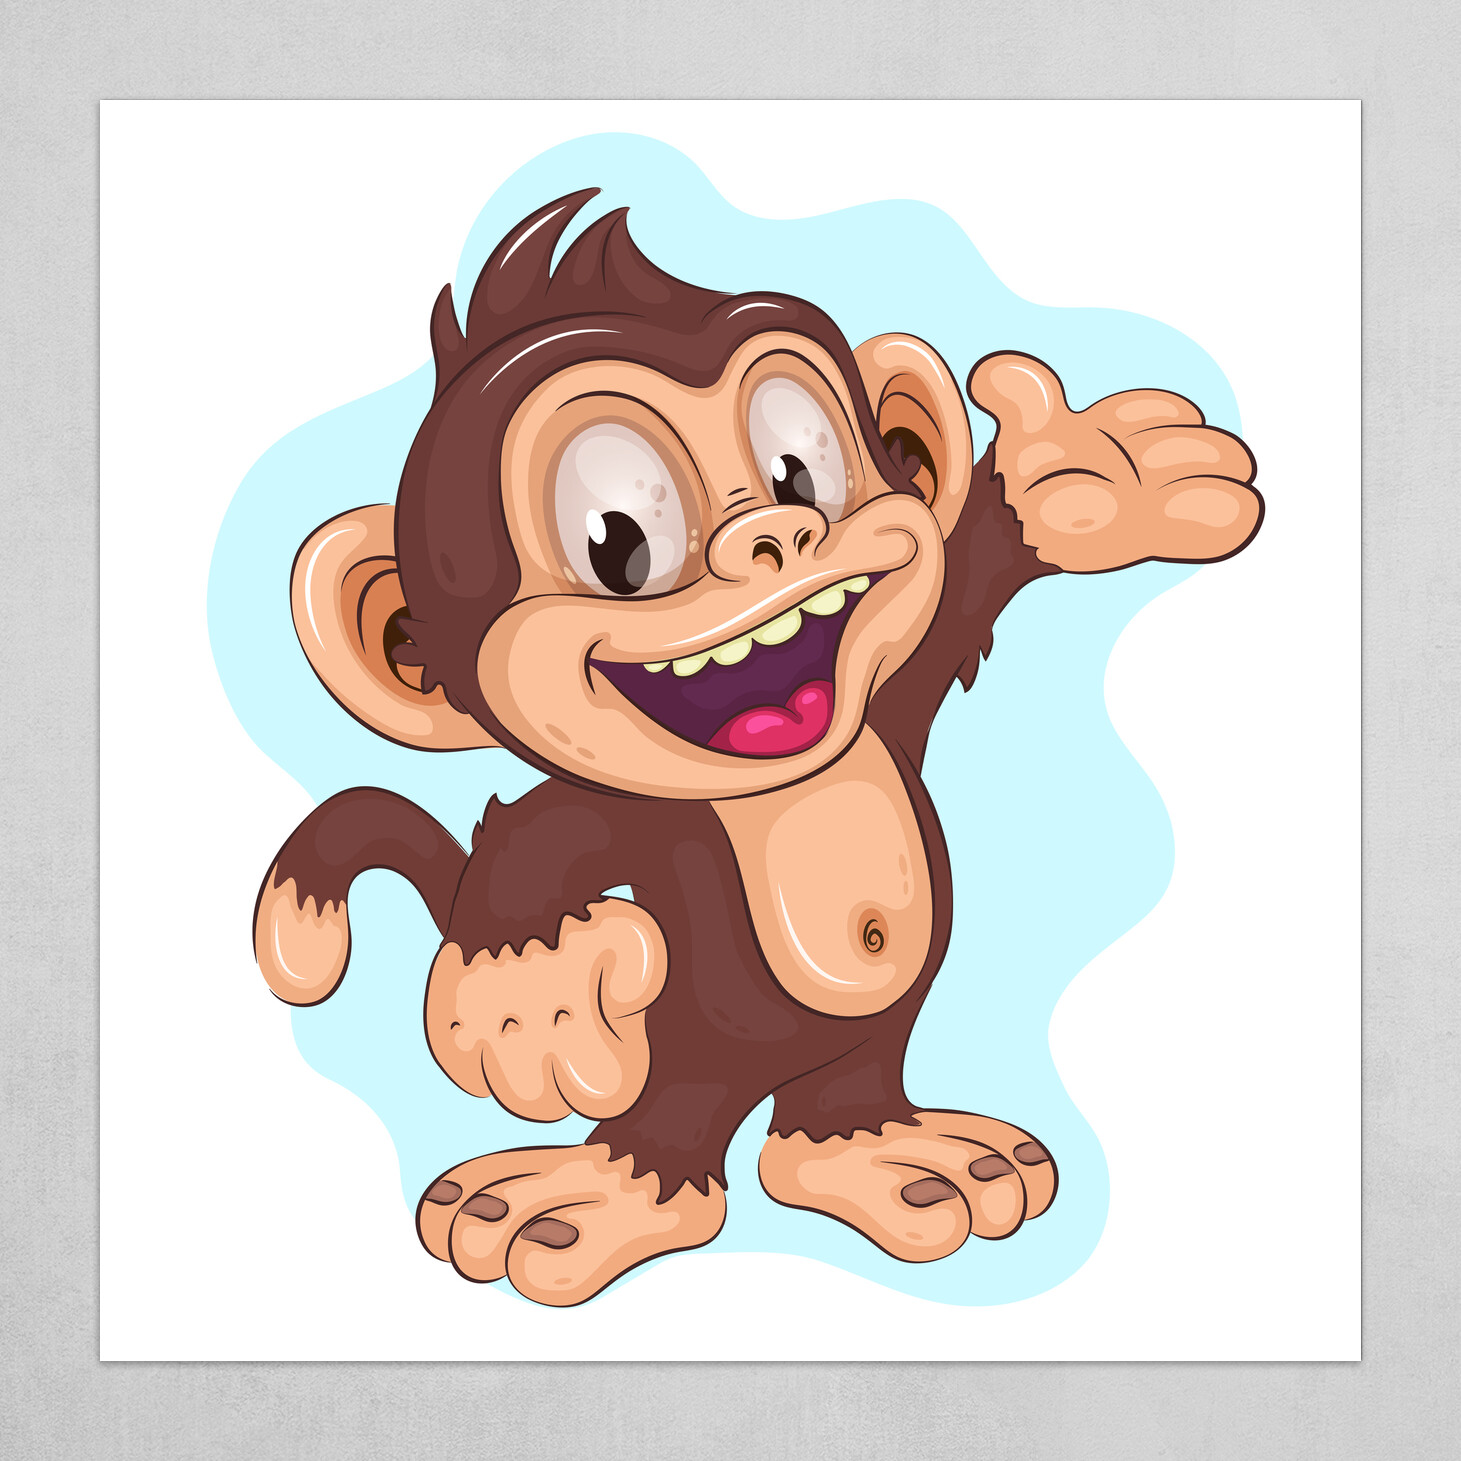 ArtStation - Cute Cartoon Monkey.